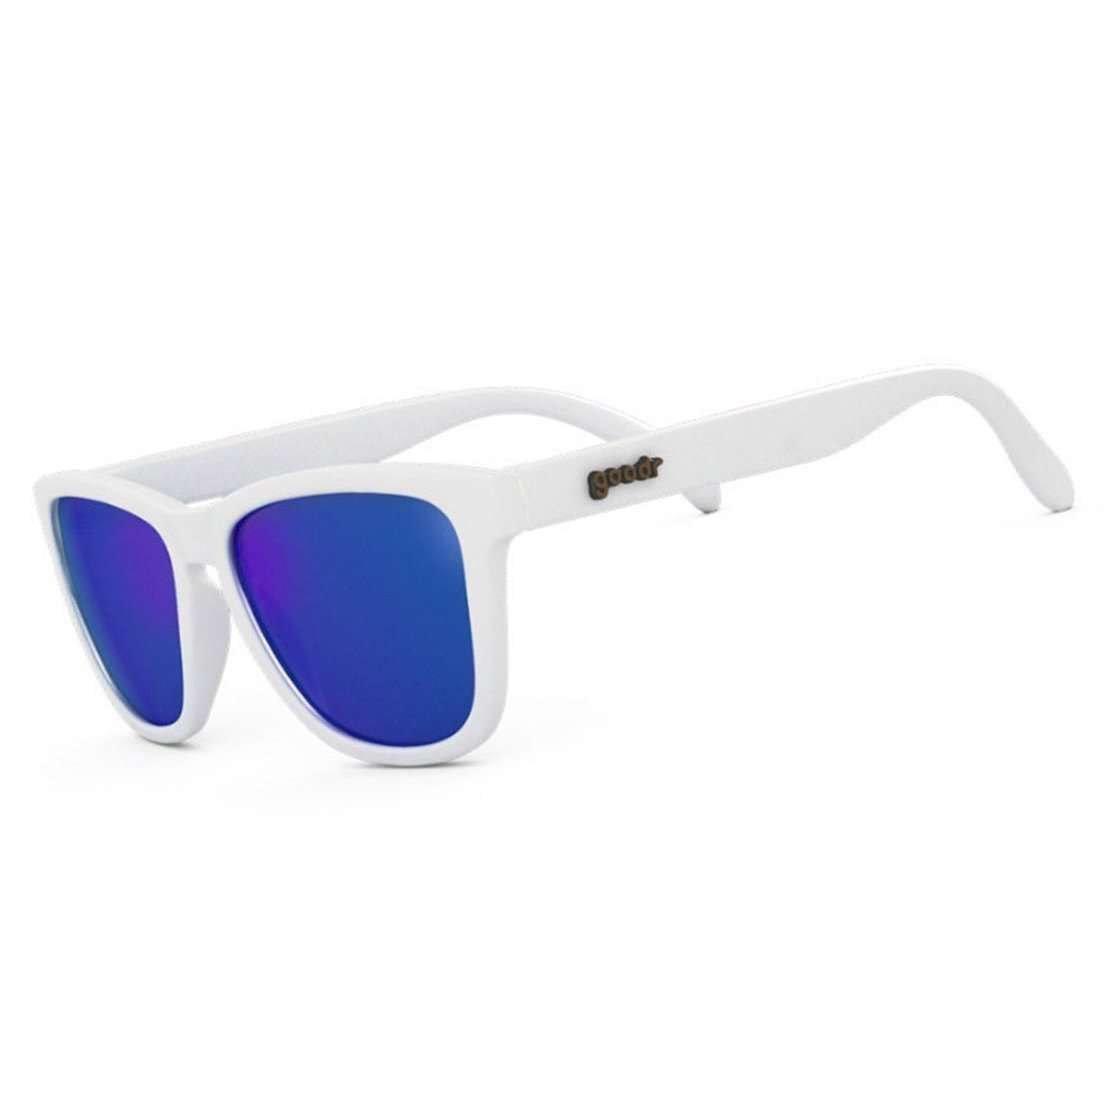 Goodr OG Sunglasses "Iced by Yeti's" Sunglasses - BlackToe Running - 